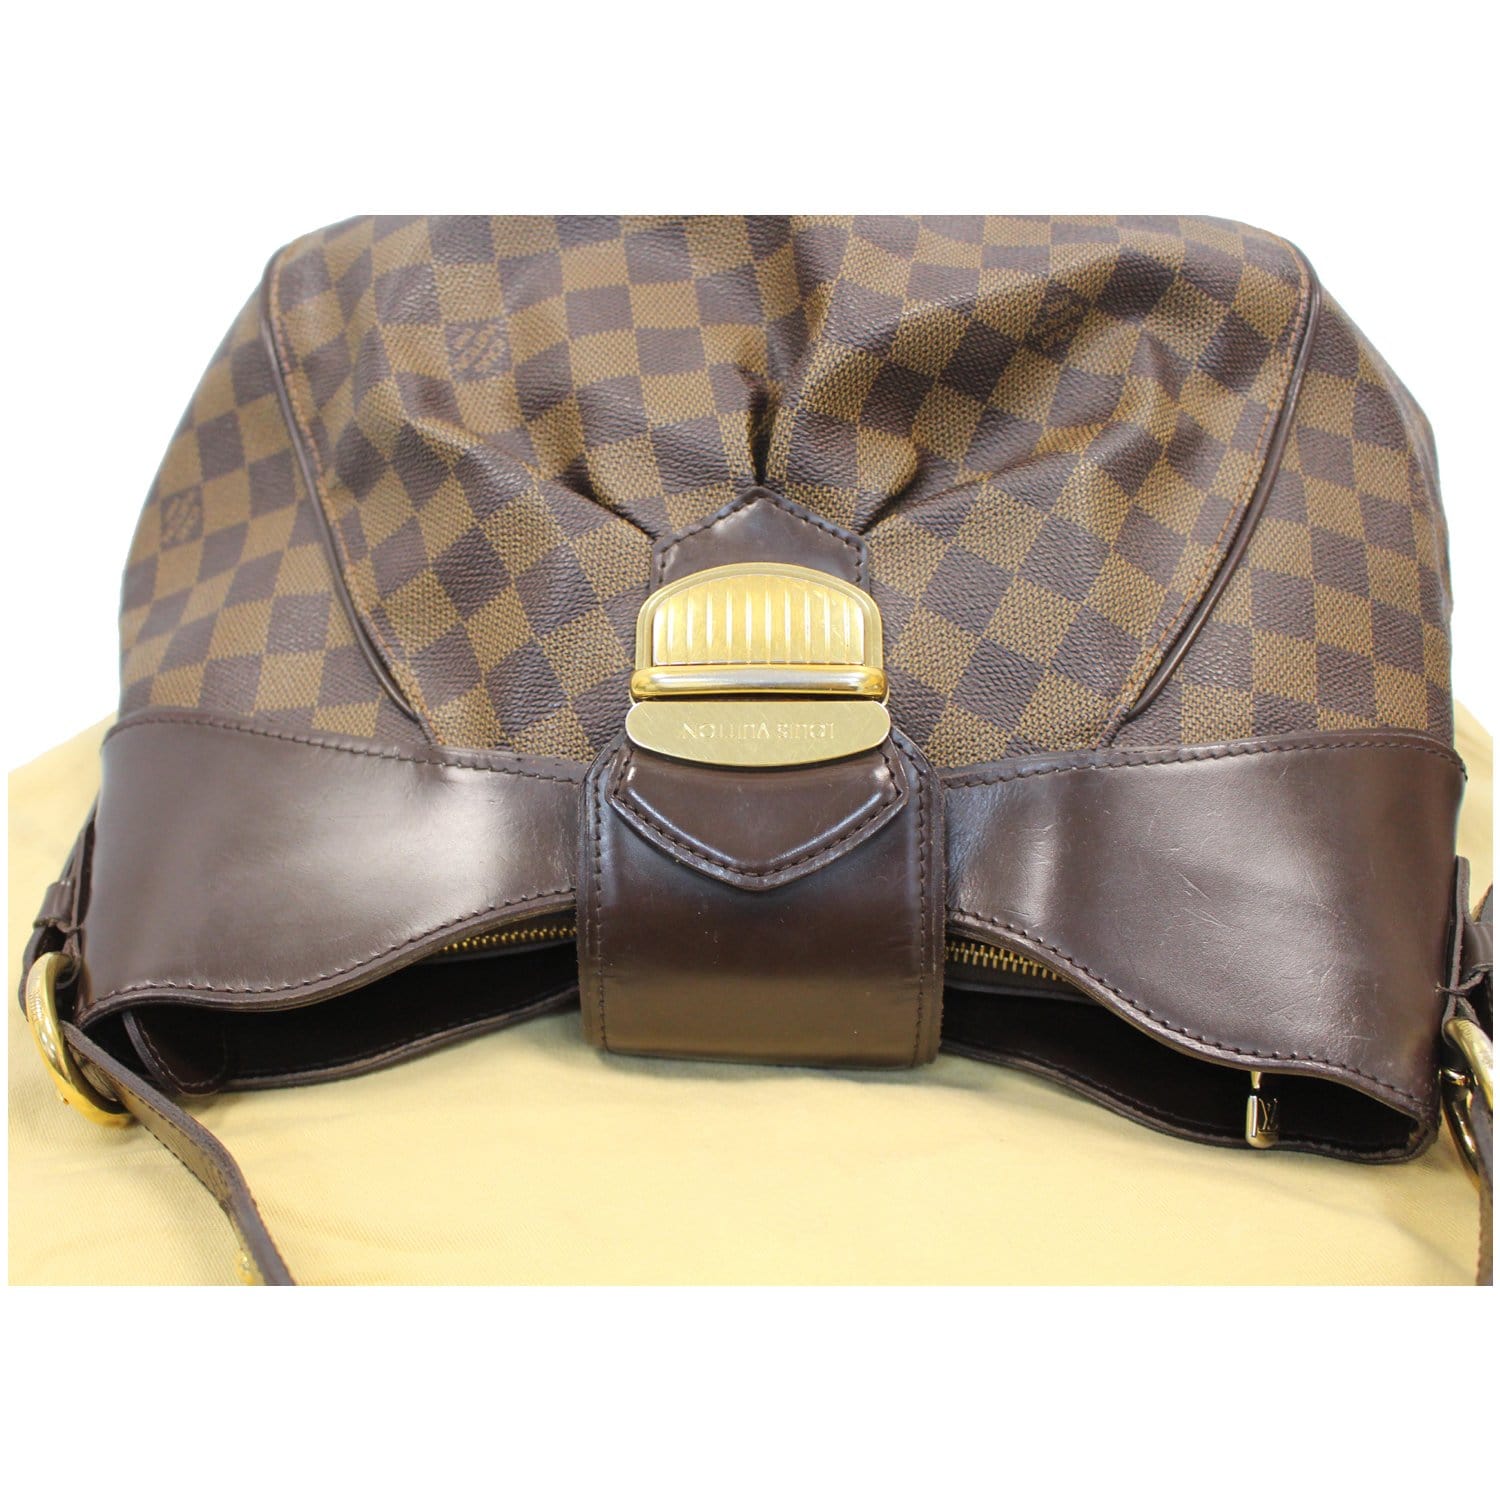 Authentic Louis Vuitton Damier Ebene Kensington Top Handle Bag w